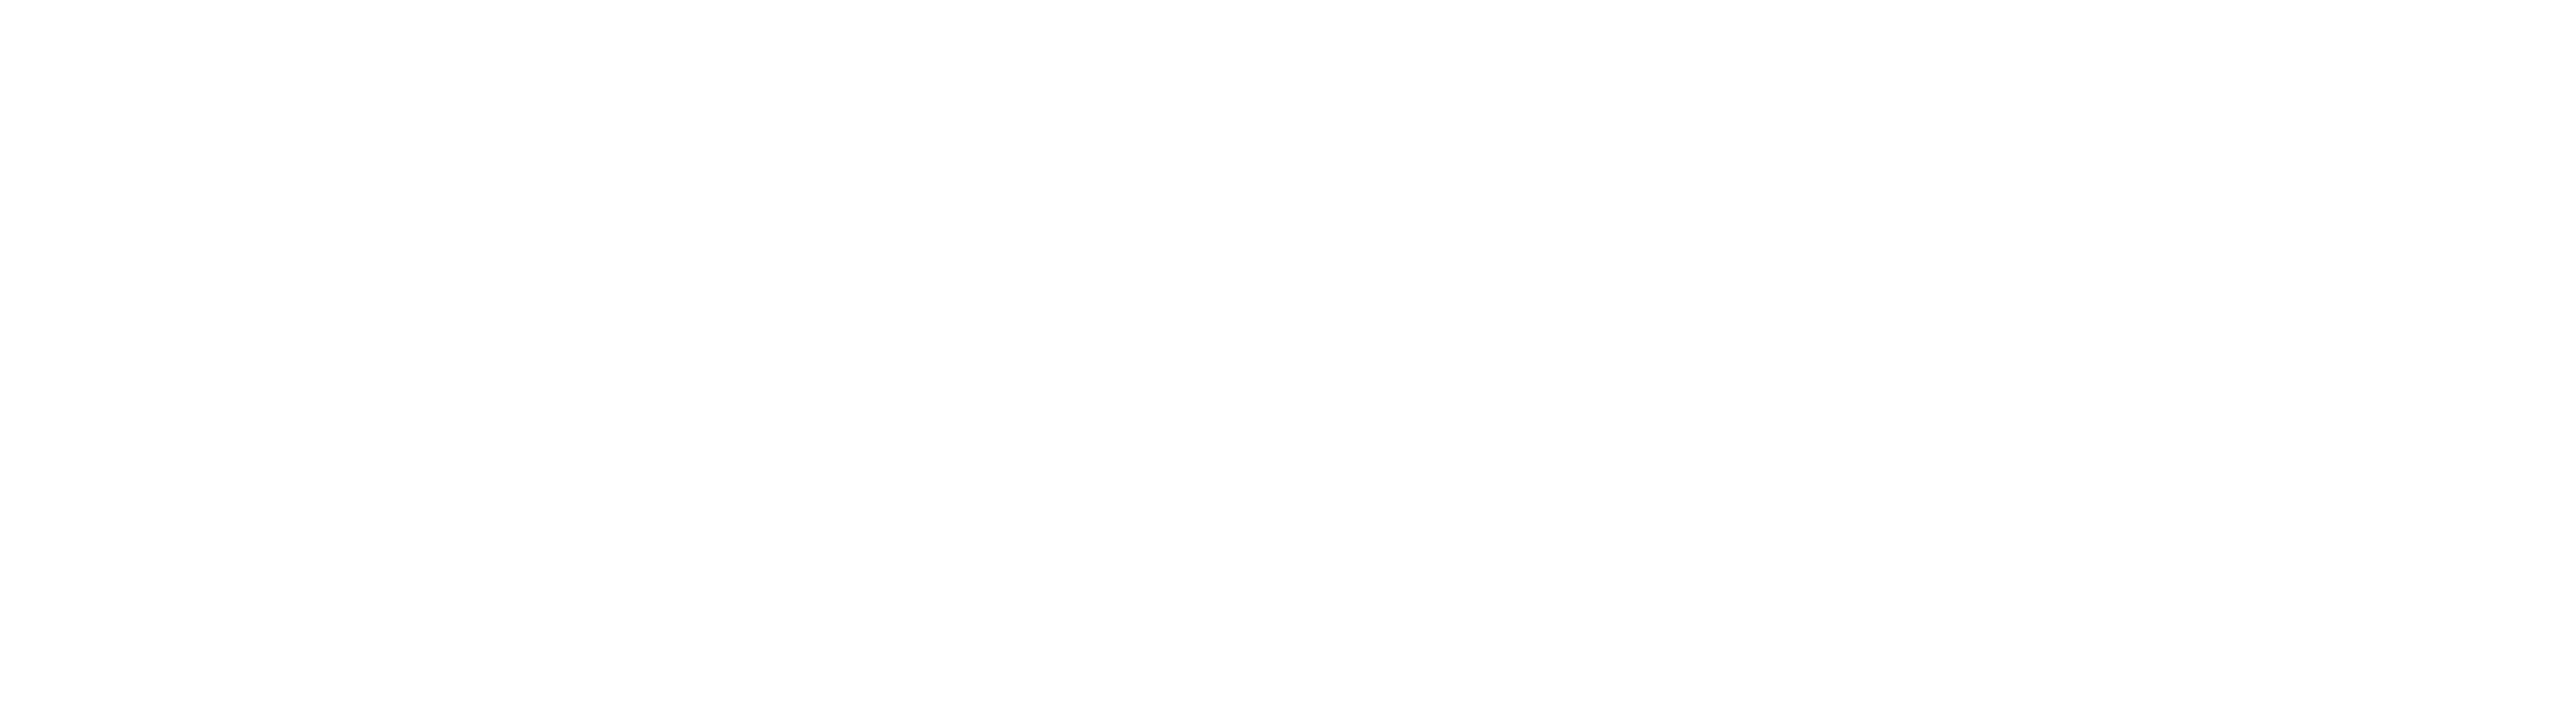 771-elite-iq-logo-white.png